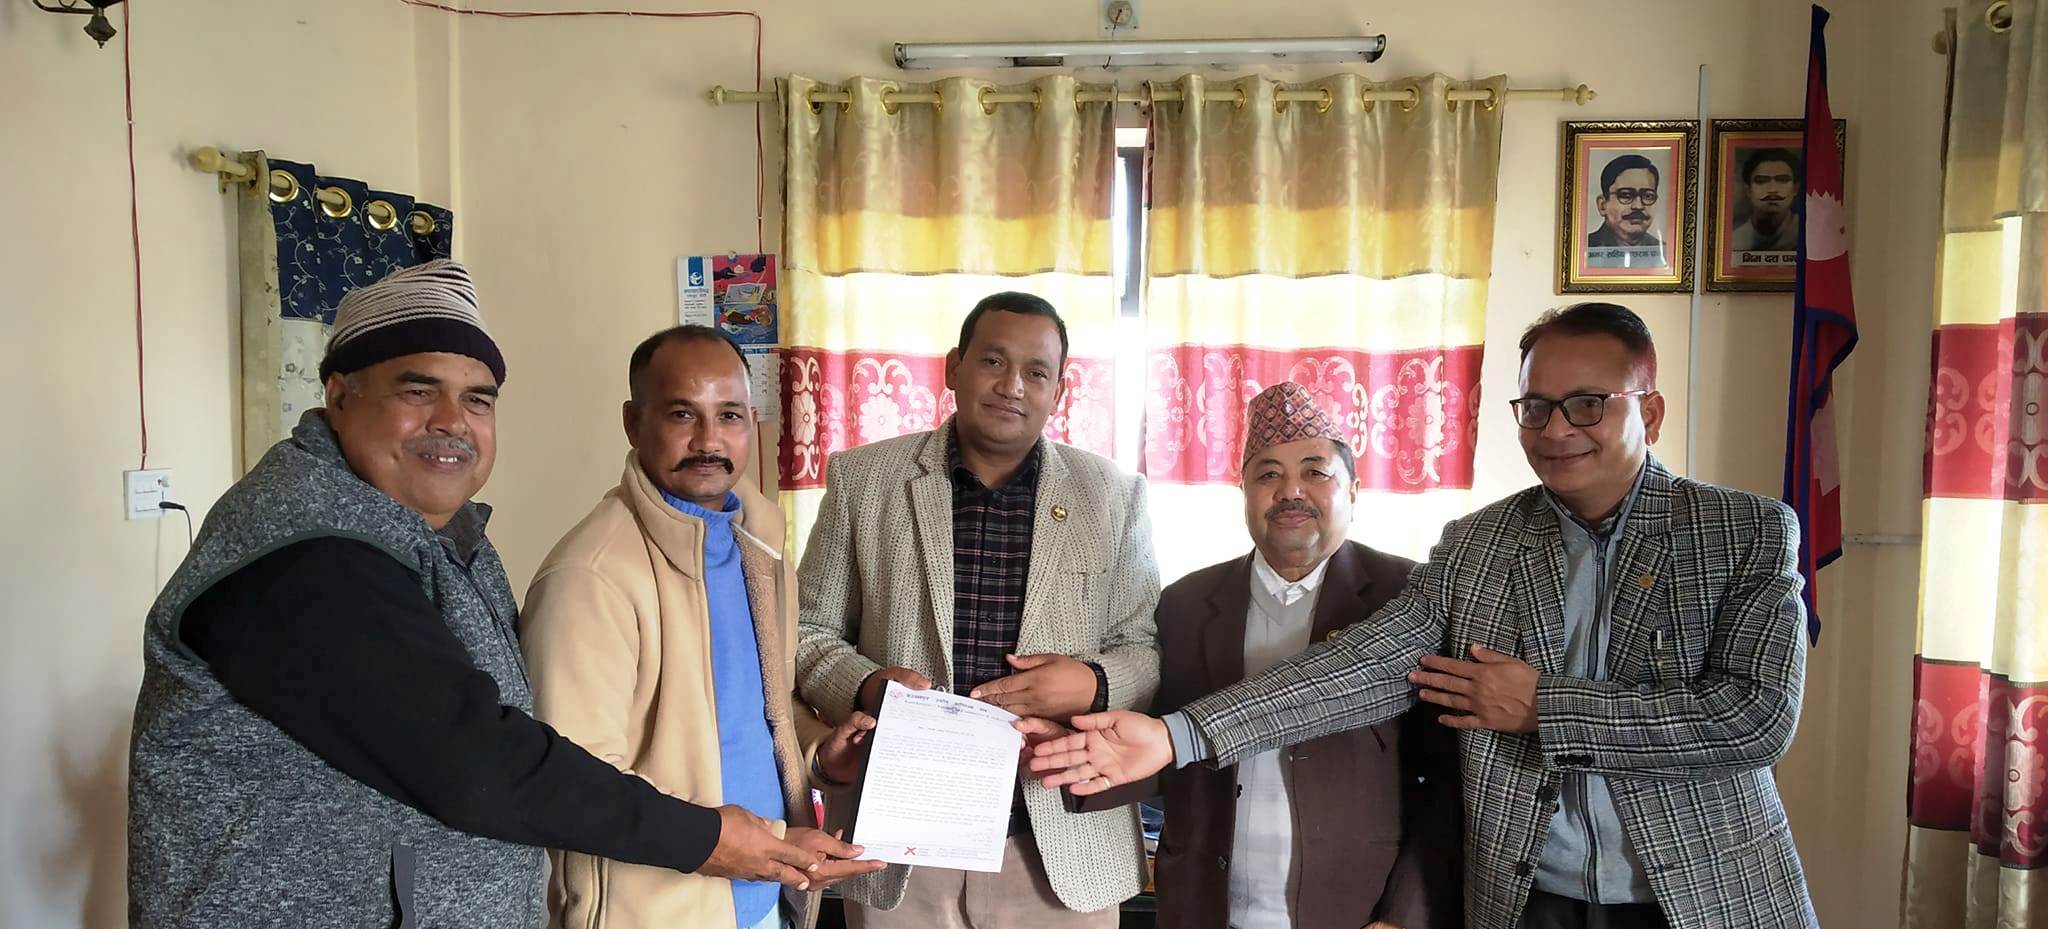 सुदूरपश्चिम प्रदेश सरकार समक्ष विभिन्न माग राख्दै ज्ञापन पत्र पेश